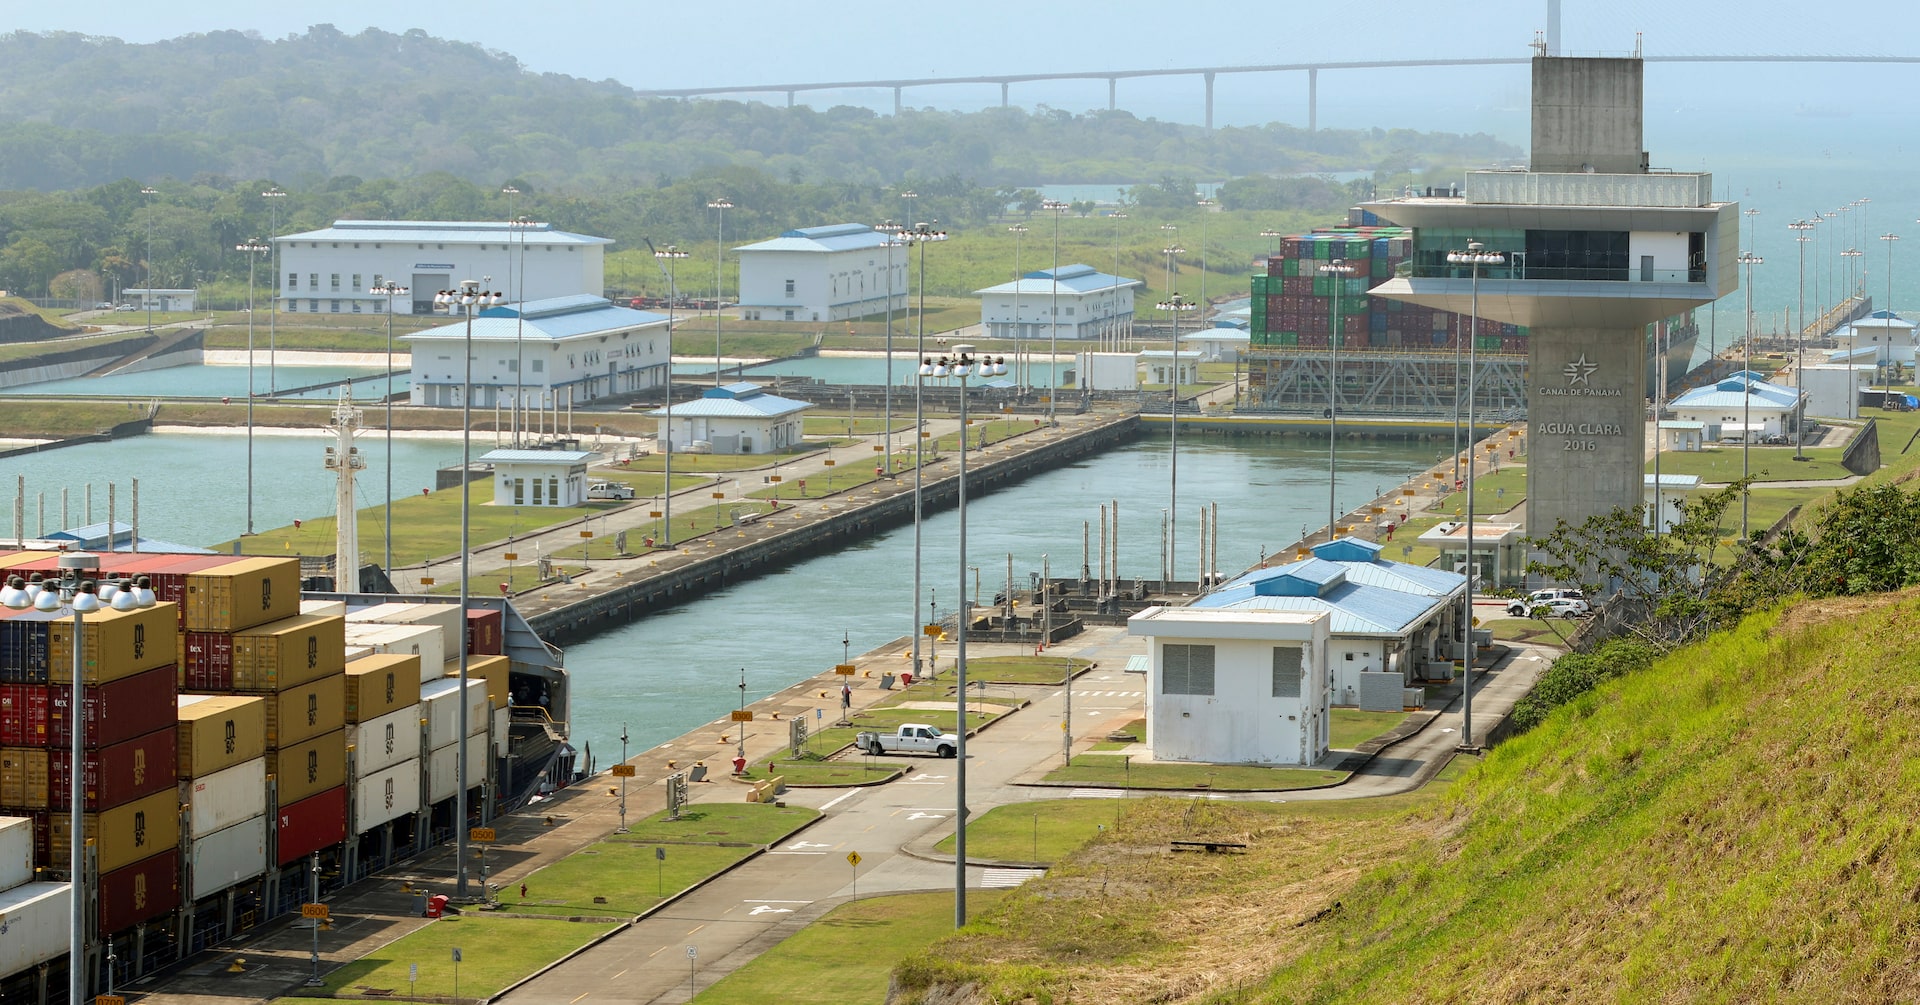 パナマ運河の水位低下、エルニーニョと水管理が原因＝国際チーム